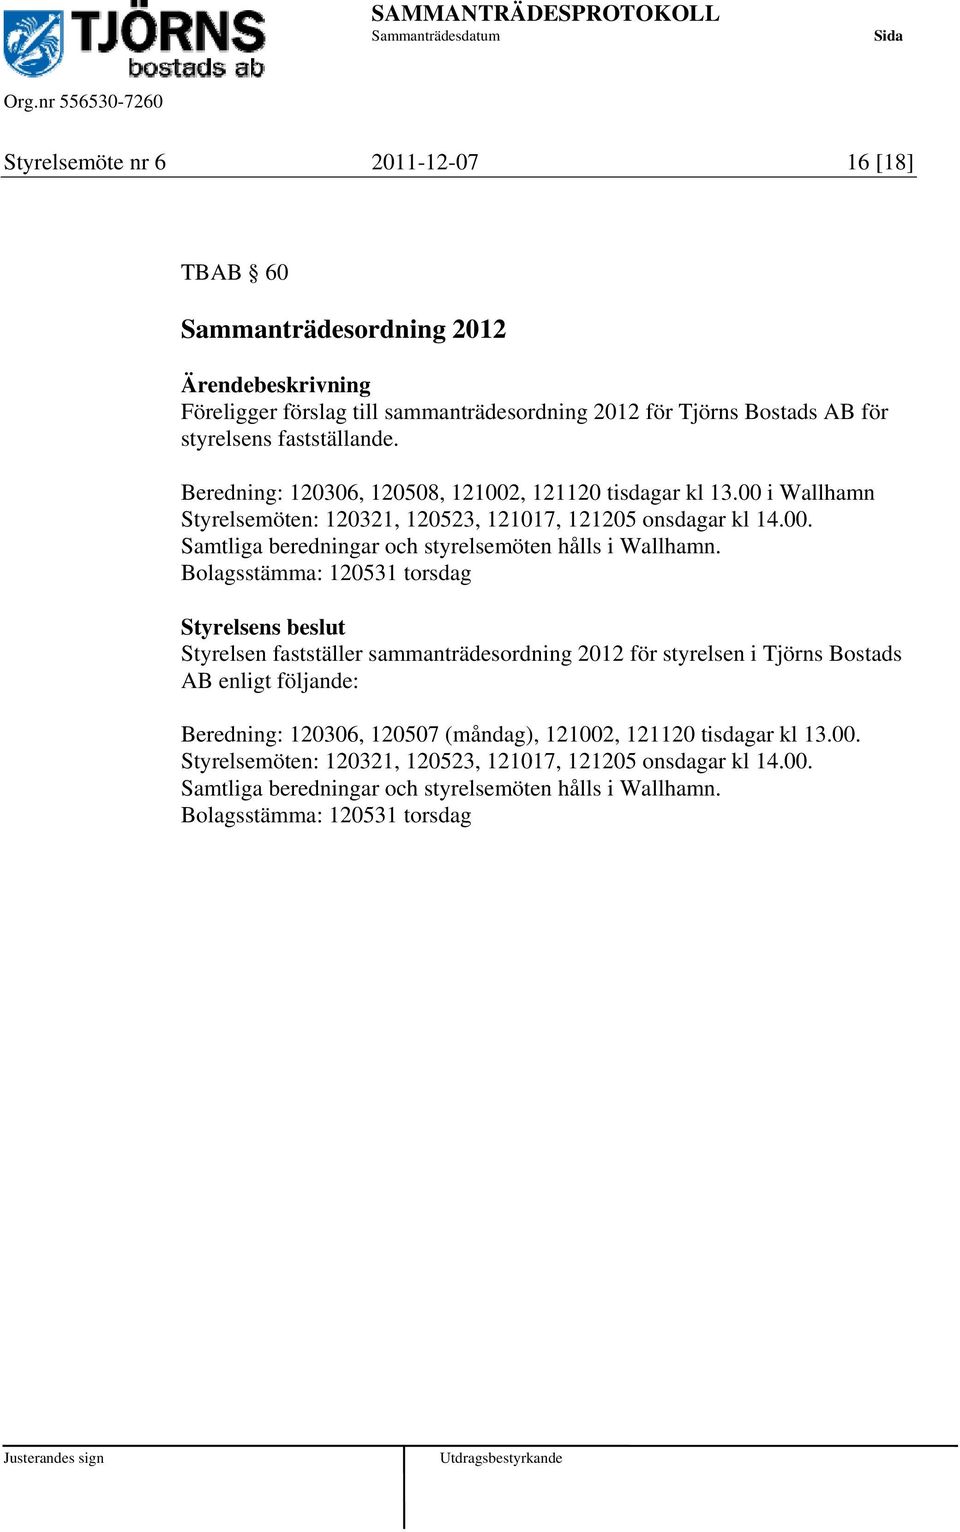 Bolagsstämma: 120531 torsdag Styrelsen fastställer sammanträdesordning 2012 för styrelsen i Tjörns Bostads AB enligt följande: Beredning: 120306, 120507 (måndag), 121002, 121120